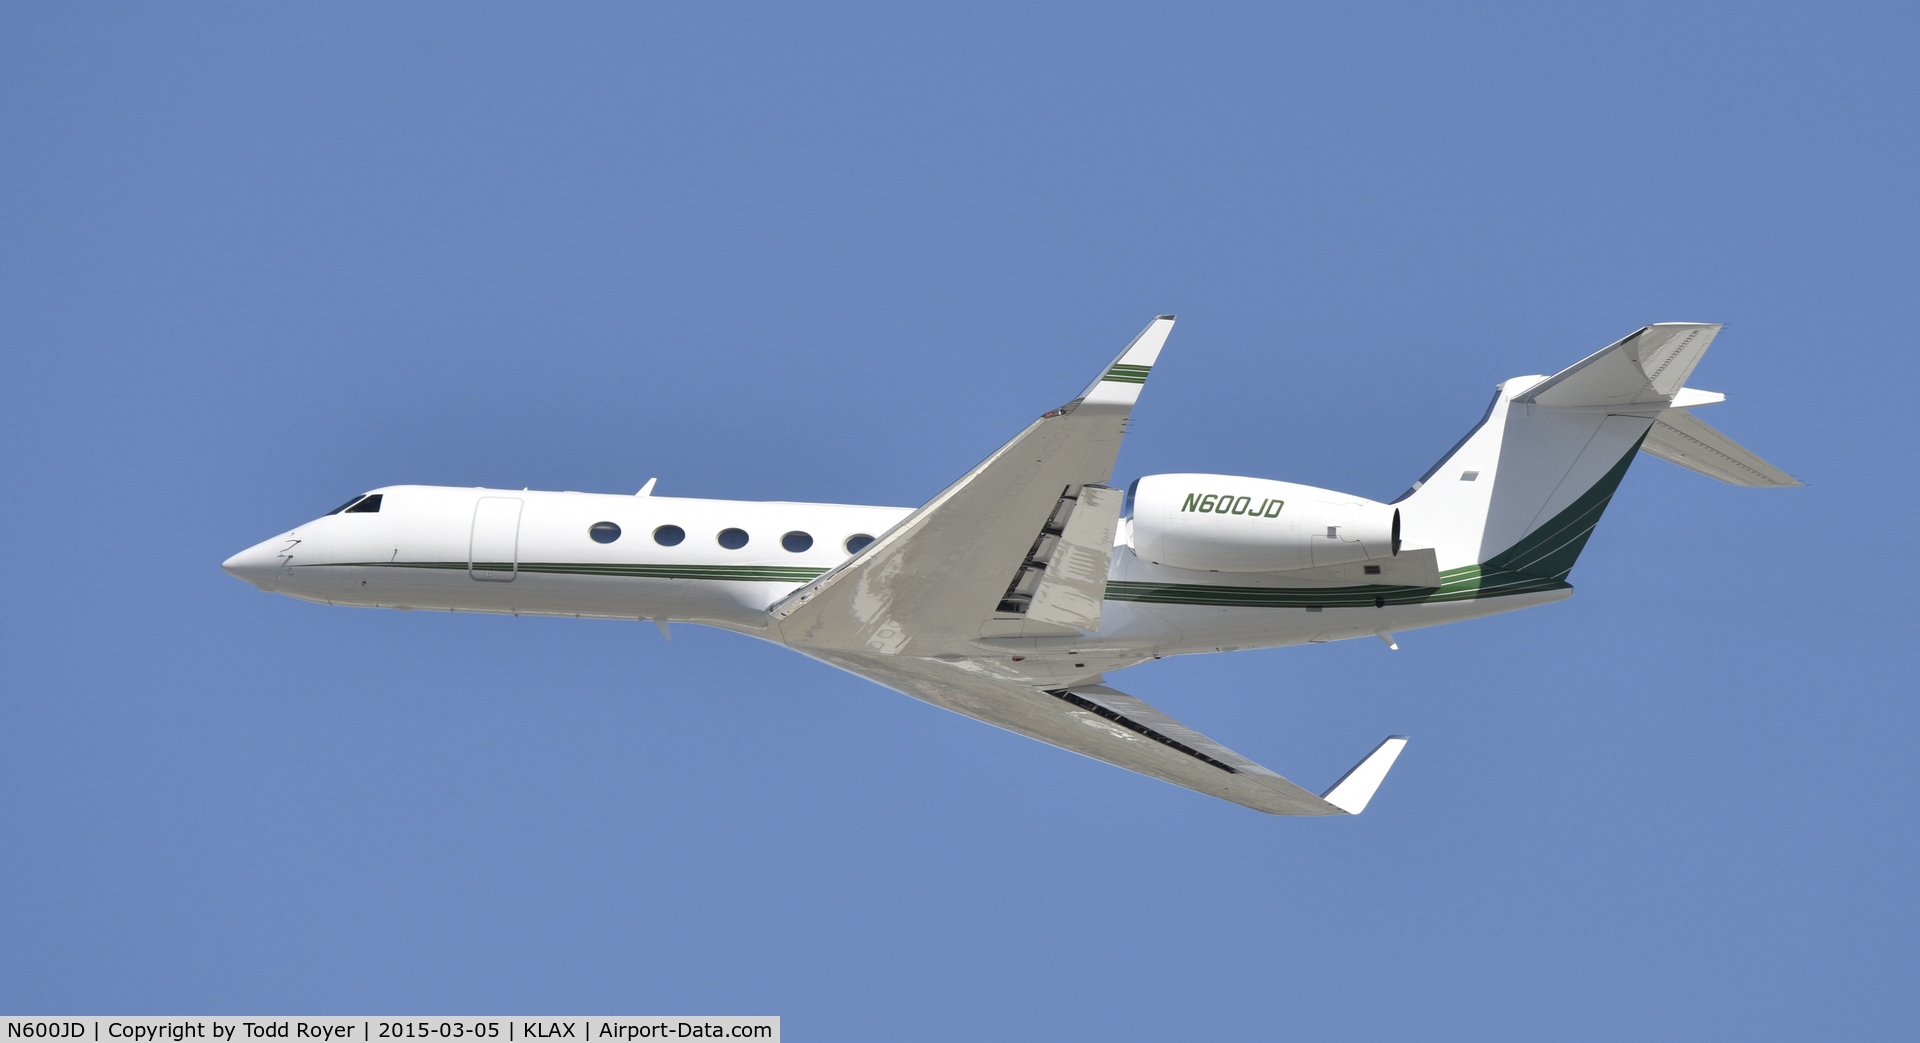 N600JD, 2001 Gulfstream Aerospace G-V C/N 640, Departing LAX on 25L